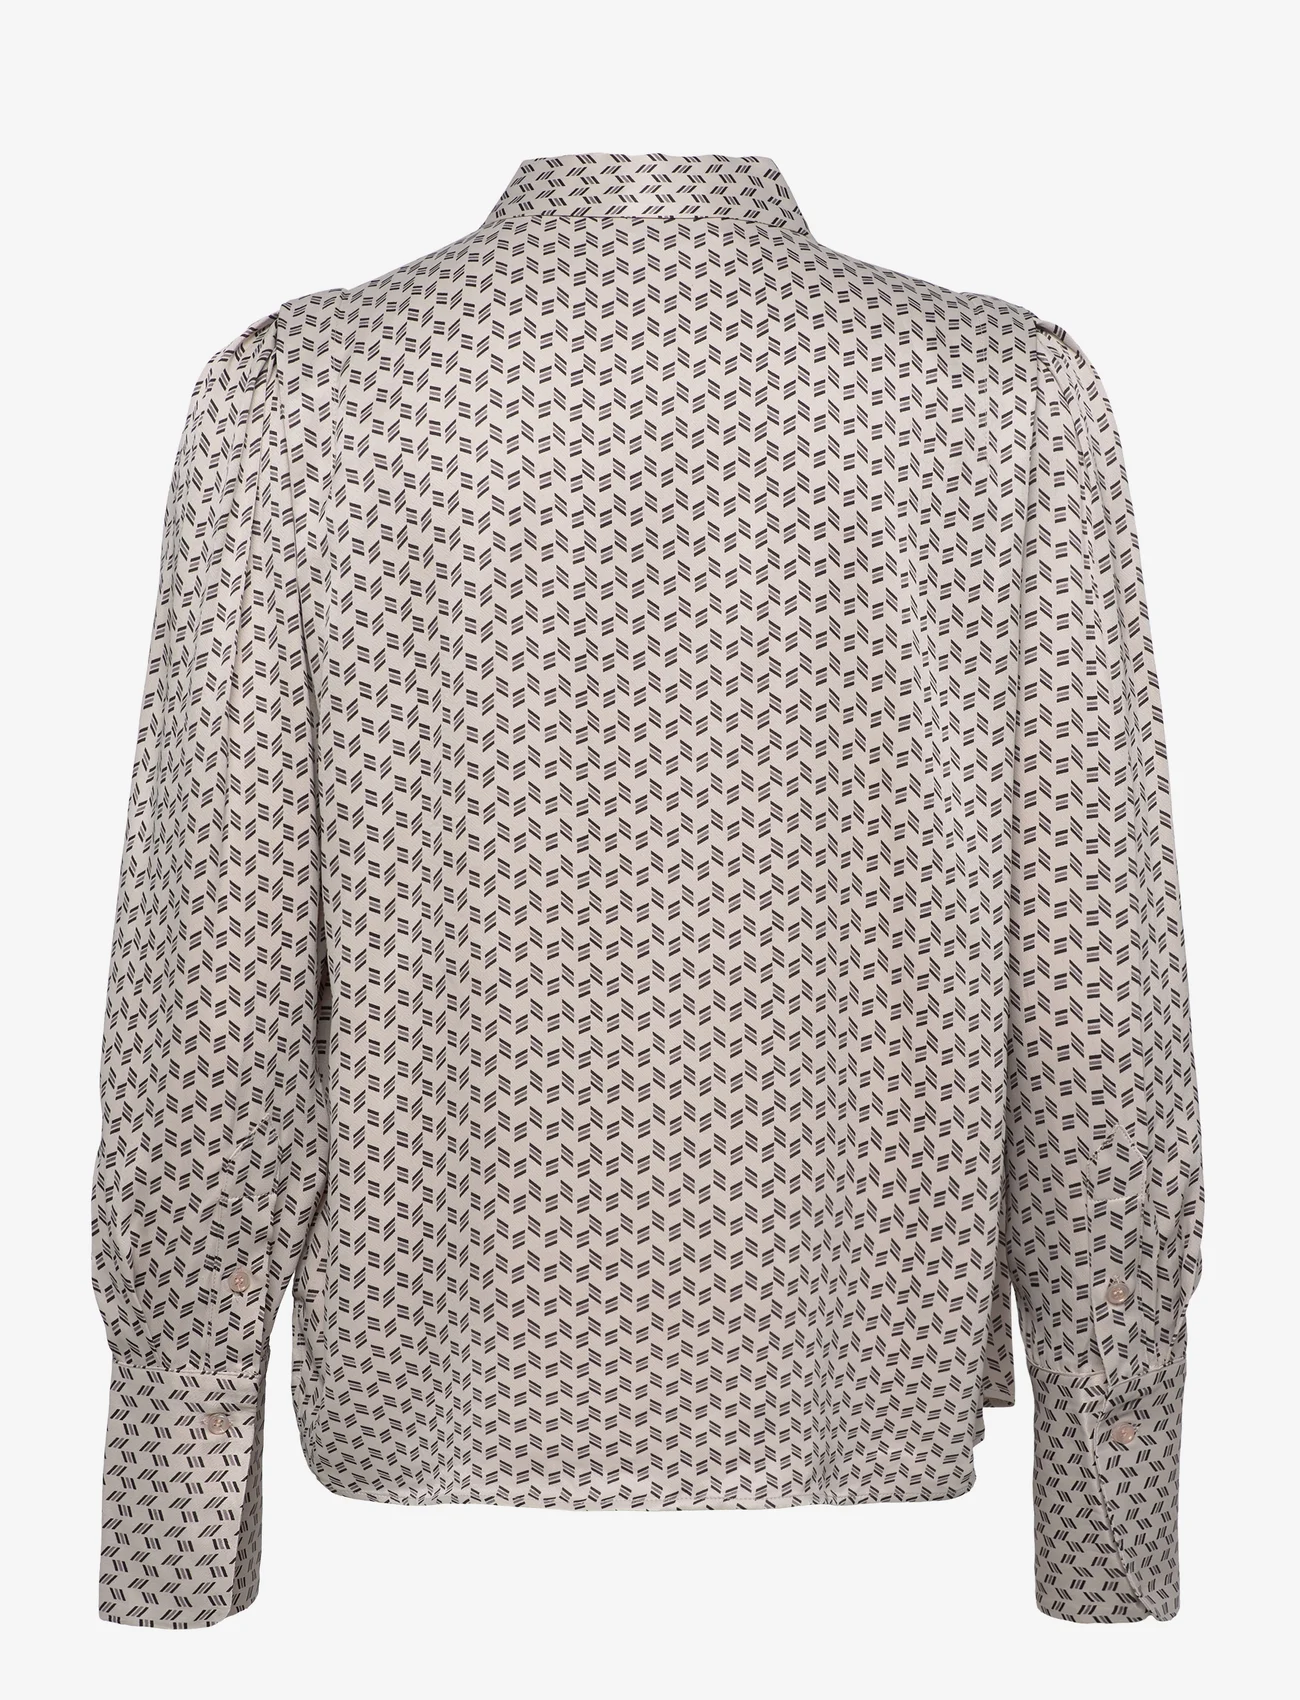 Levete Room - LR-VIDA - marškiniai ilgomis rankovėmis - l901c - chateau gray combi - 1